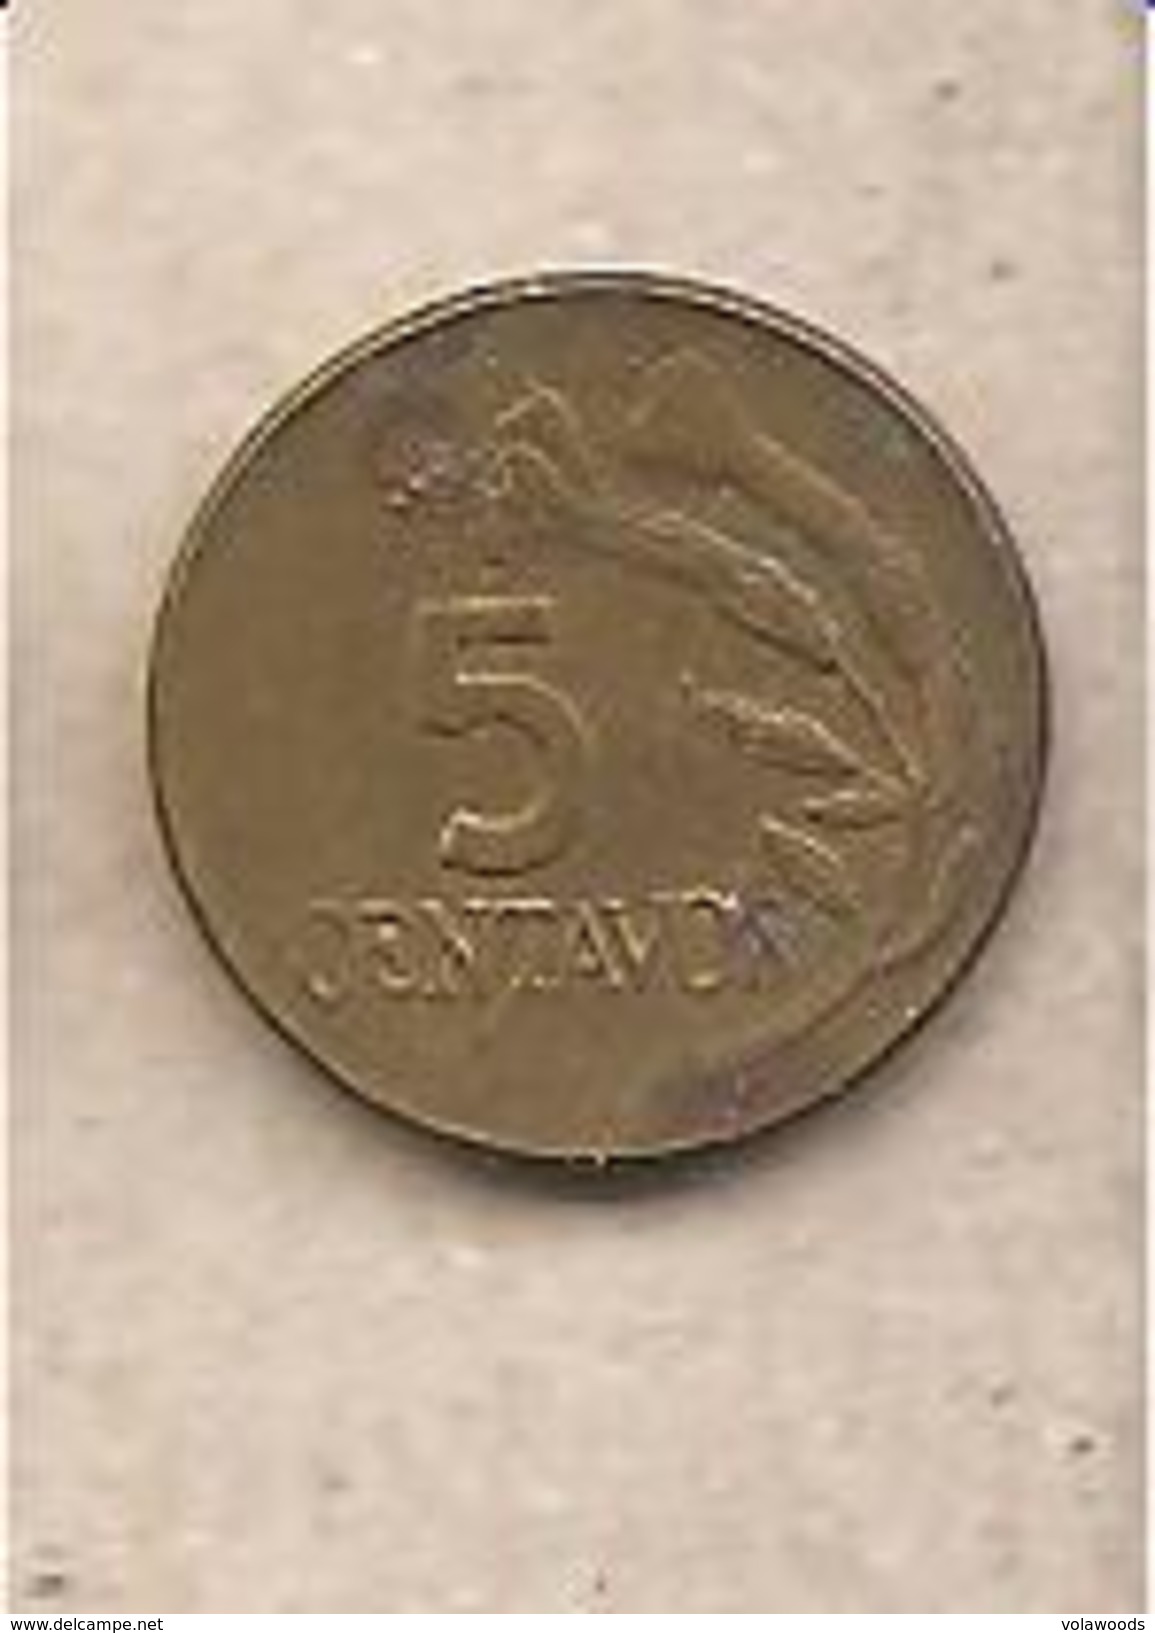 Perù - Moneta Circolata Da 5 Centesimi - 1973 - Pérou